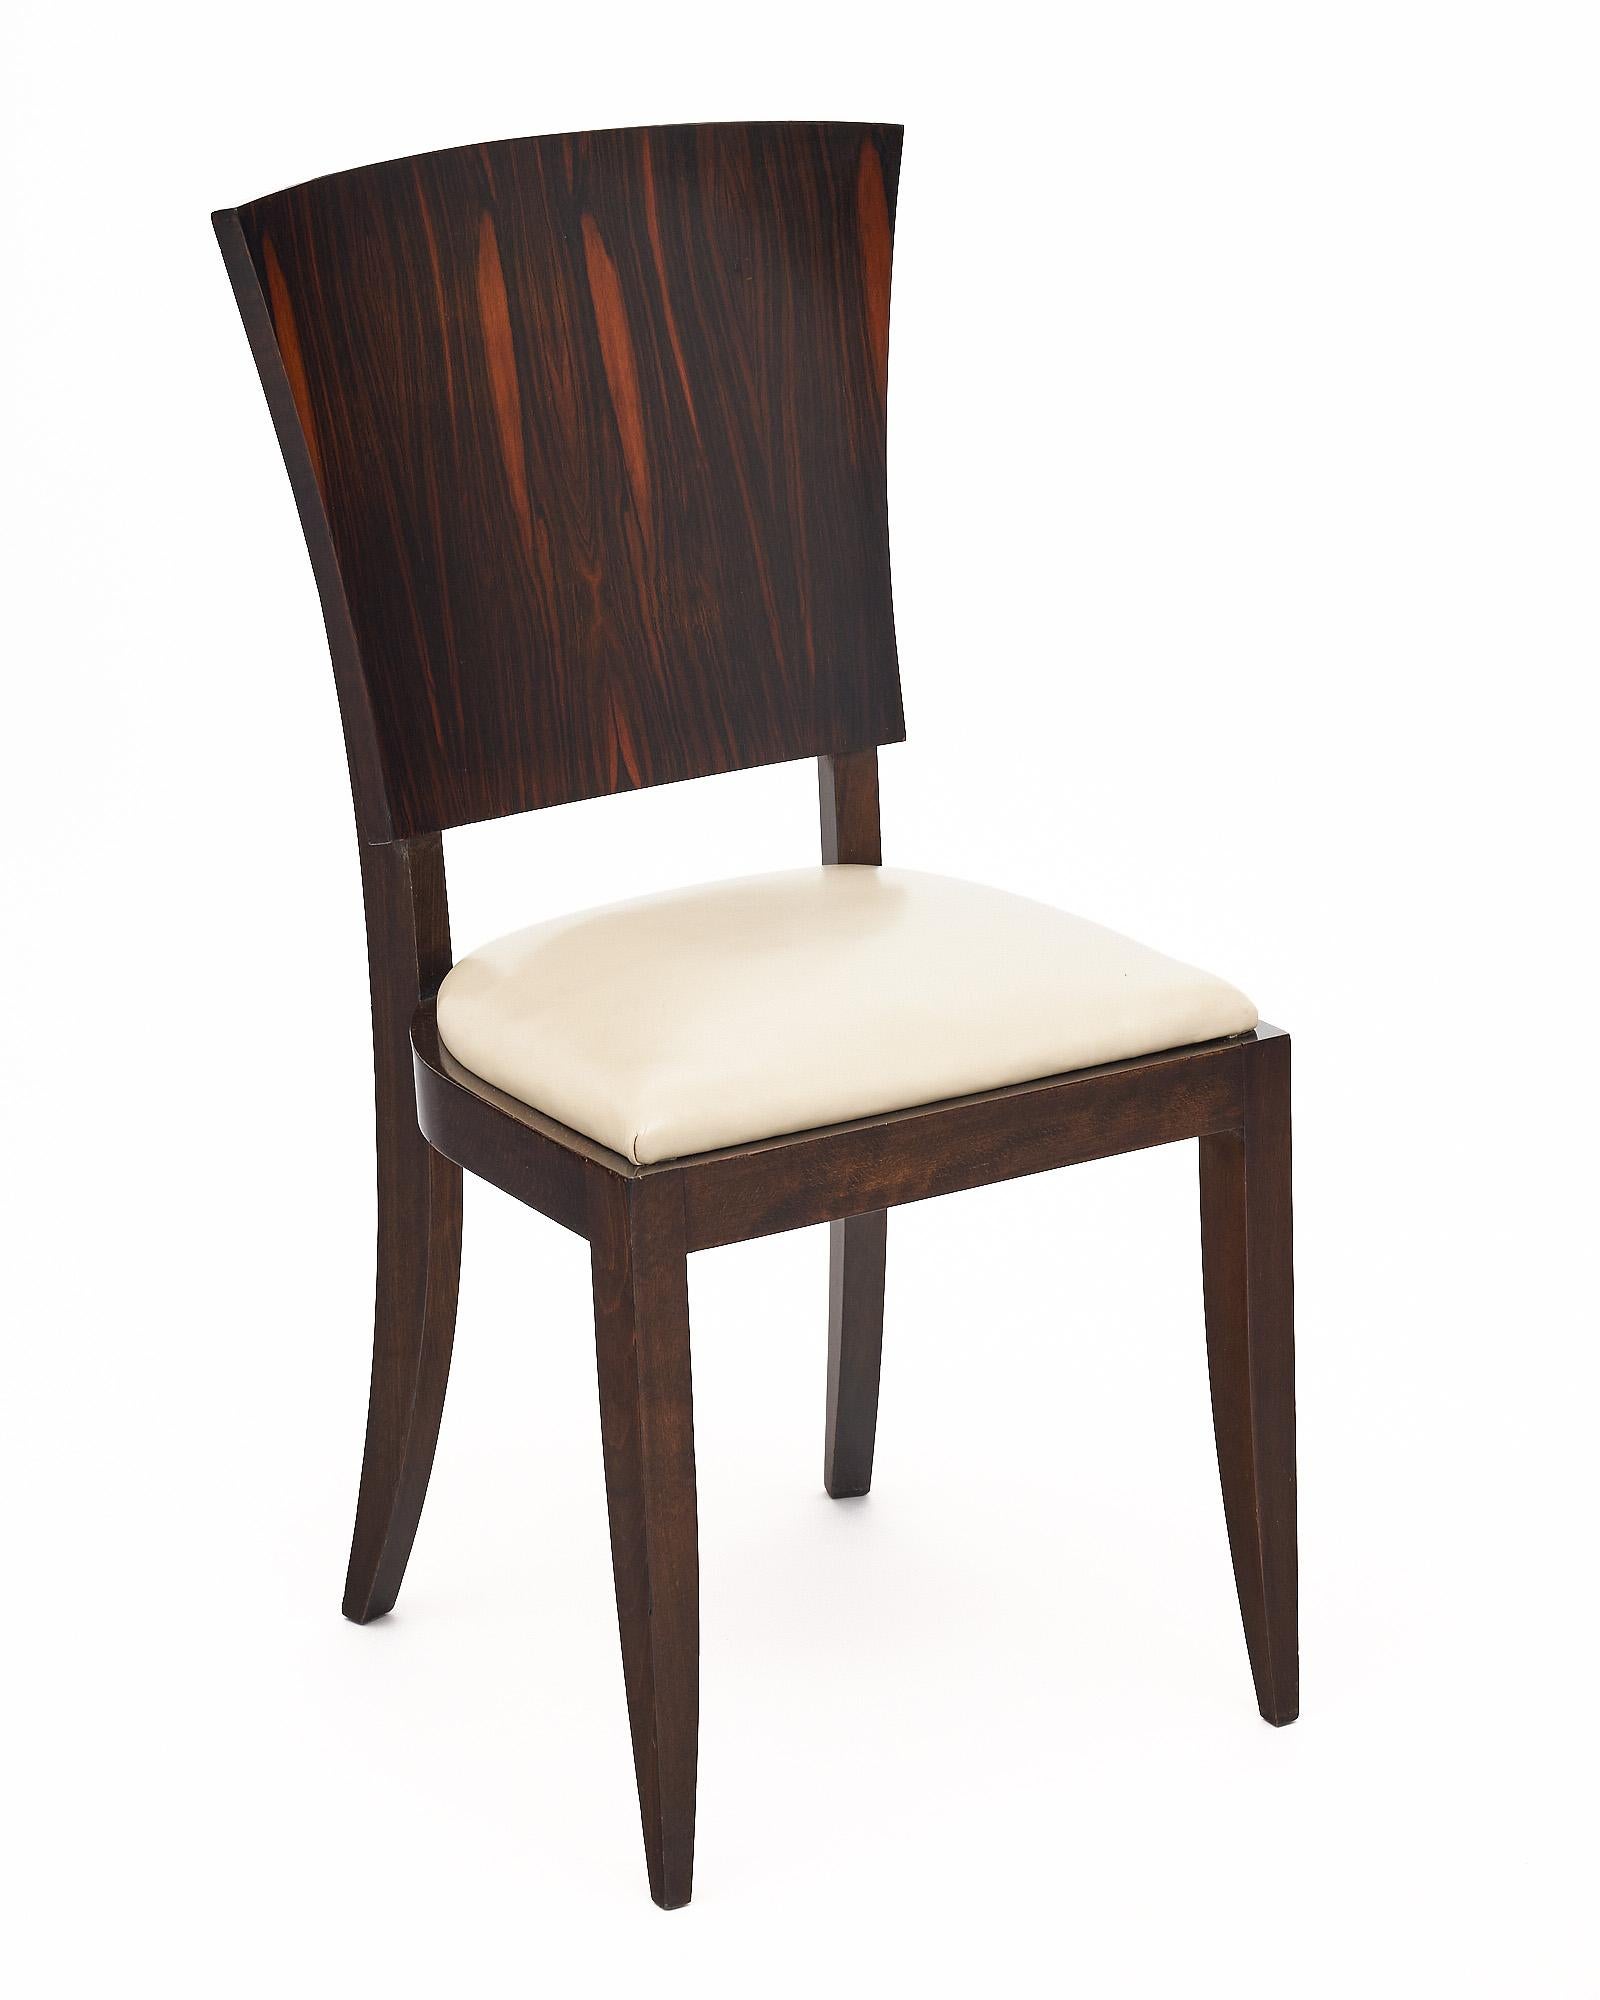 Satz von sechs Esszimmerstühlen aus der Zeit des Art déco in Frankreich in der Art von Jules Leleu. Die Stühle sind mit markanten Rückenlehnen aus Makassar-Ebenholz und Sitzflächen aus weißem Leder ausgestattet. Die Stühle sind mit einer